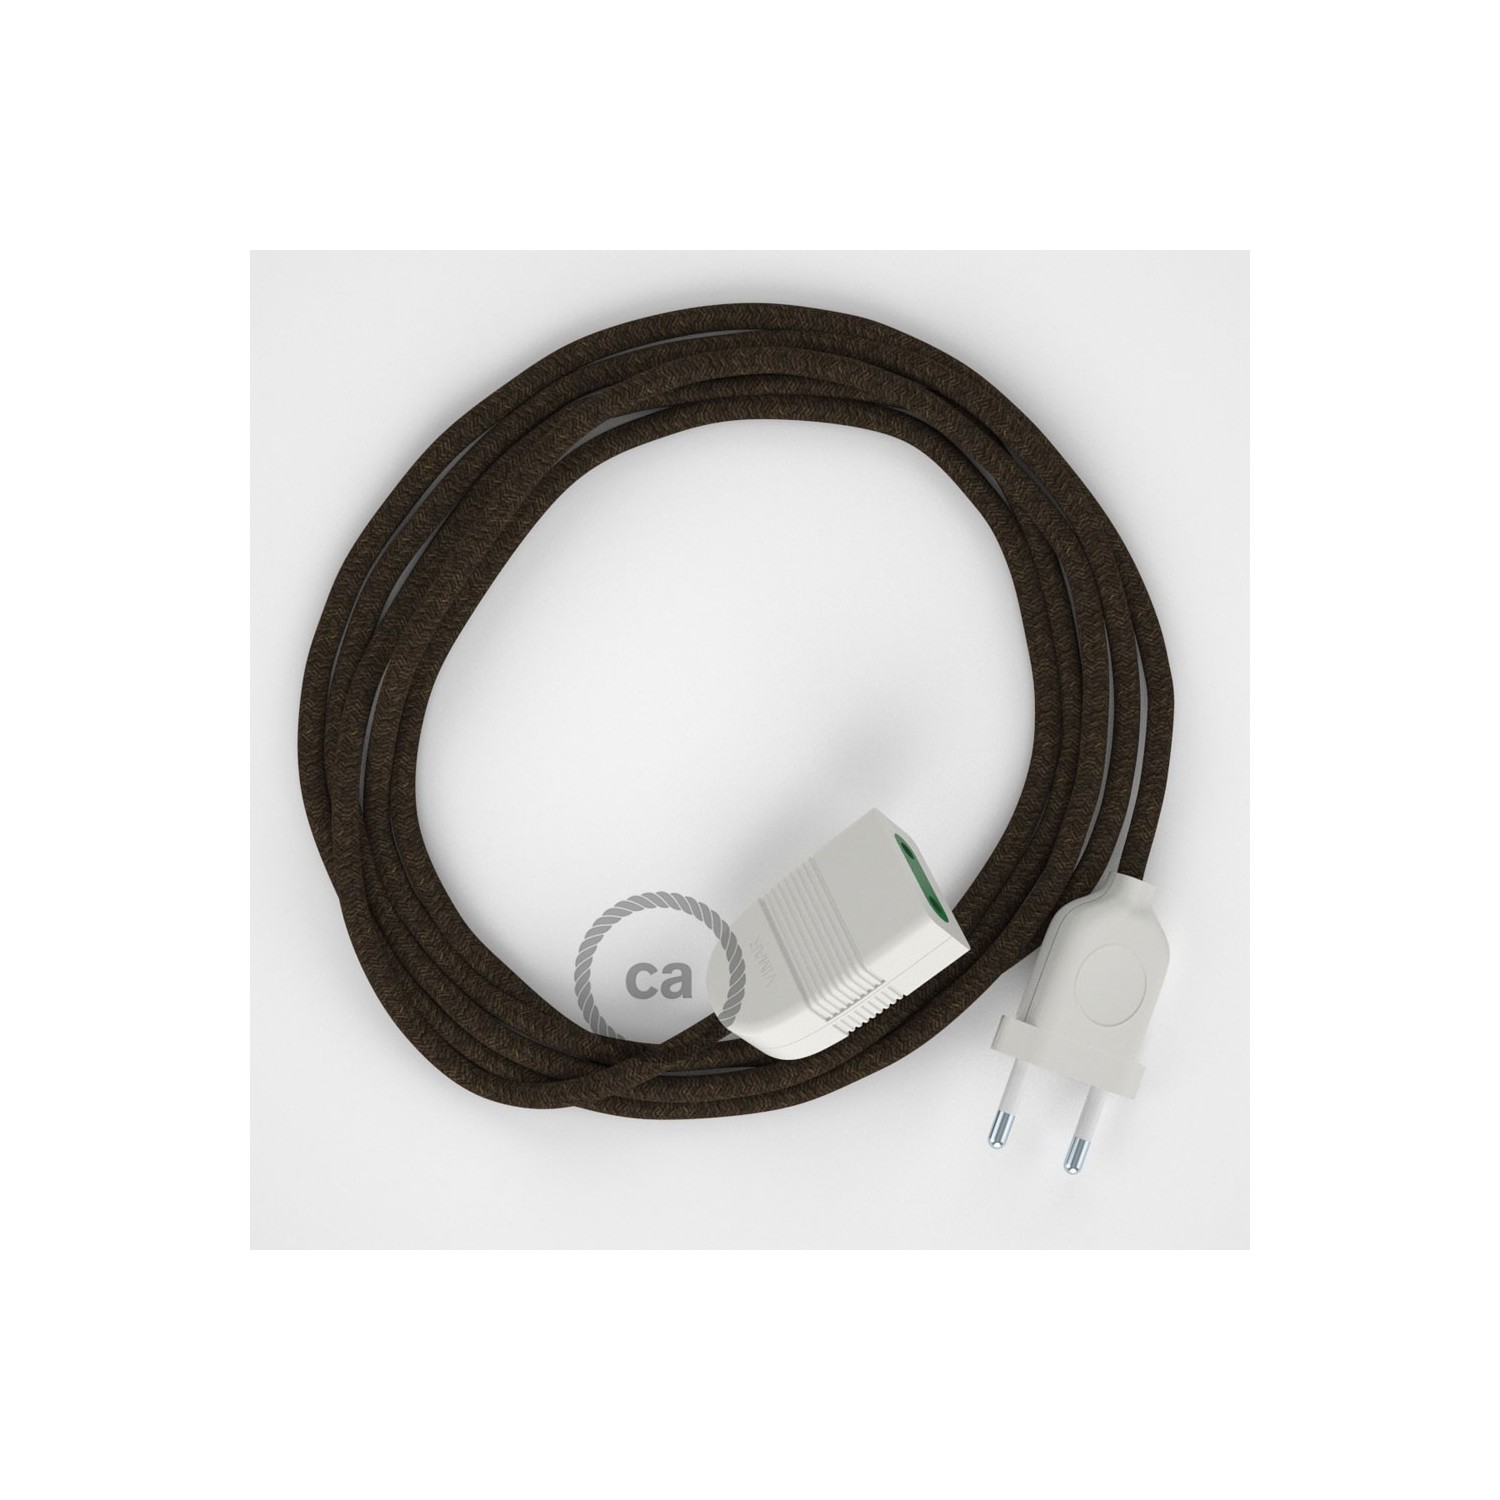 Rallonge électrique avec câble textile RN04 Lin Naturel Marron 2P 10A Made in Italy.